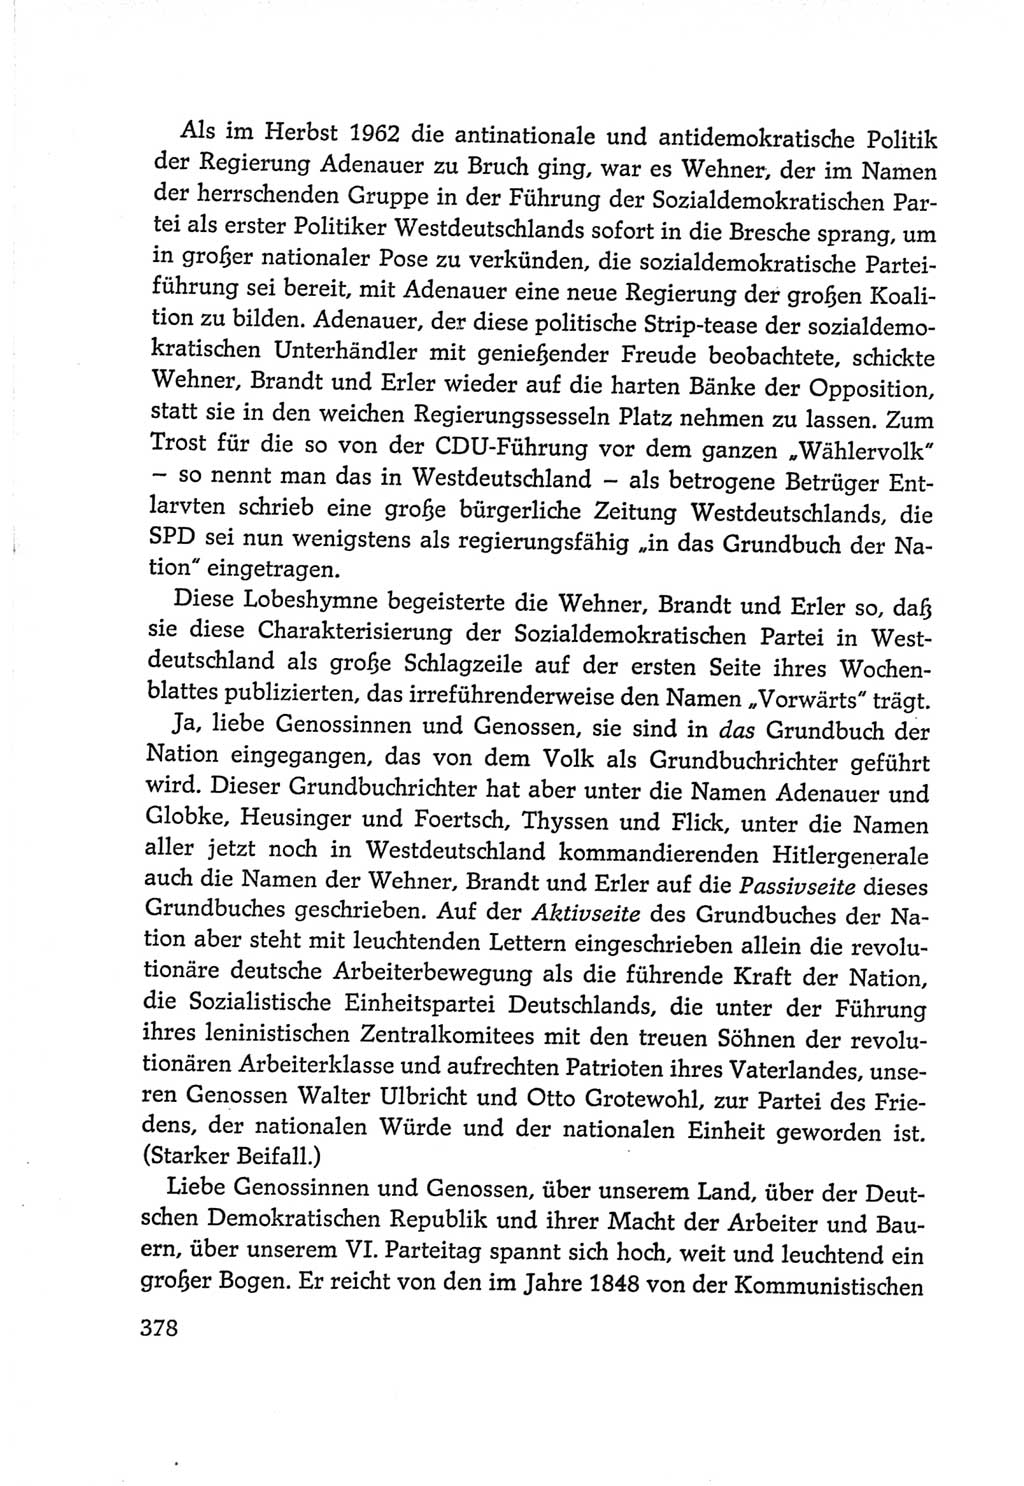 Protokoll der Verhandlungen des Ⅵ. Parteitages der Sozialistischen Einheitspartei Deutschlands (SED) [Deutsche Demokratische Republik (DDR)] 1963, Band Ⅰ, Seite 378 (Prot. Verh. Ⅵ. PT SED DDR 1963, Bd. Ⅰ, S. 378)